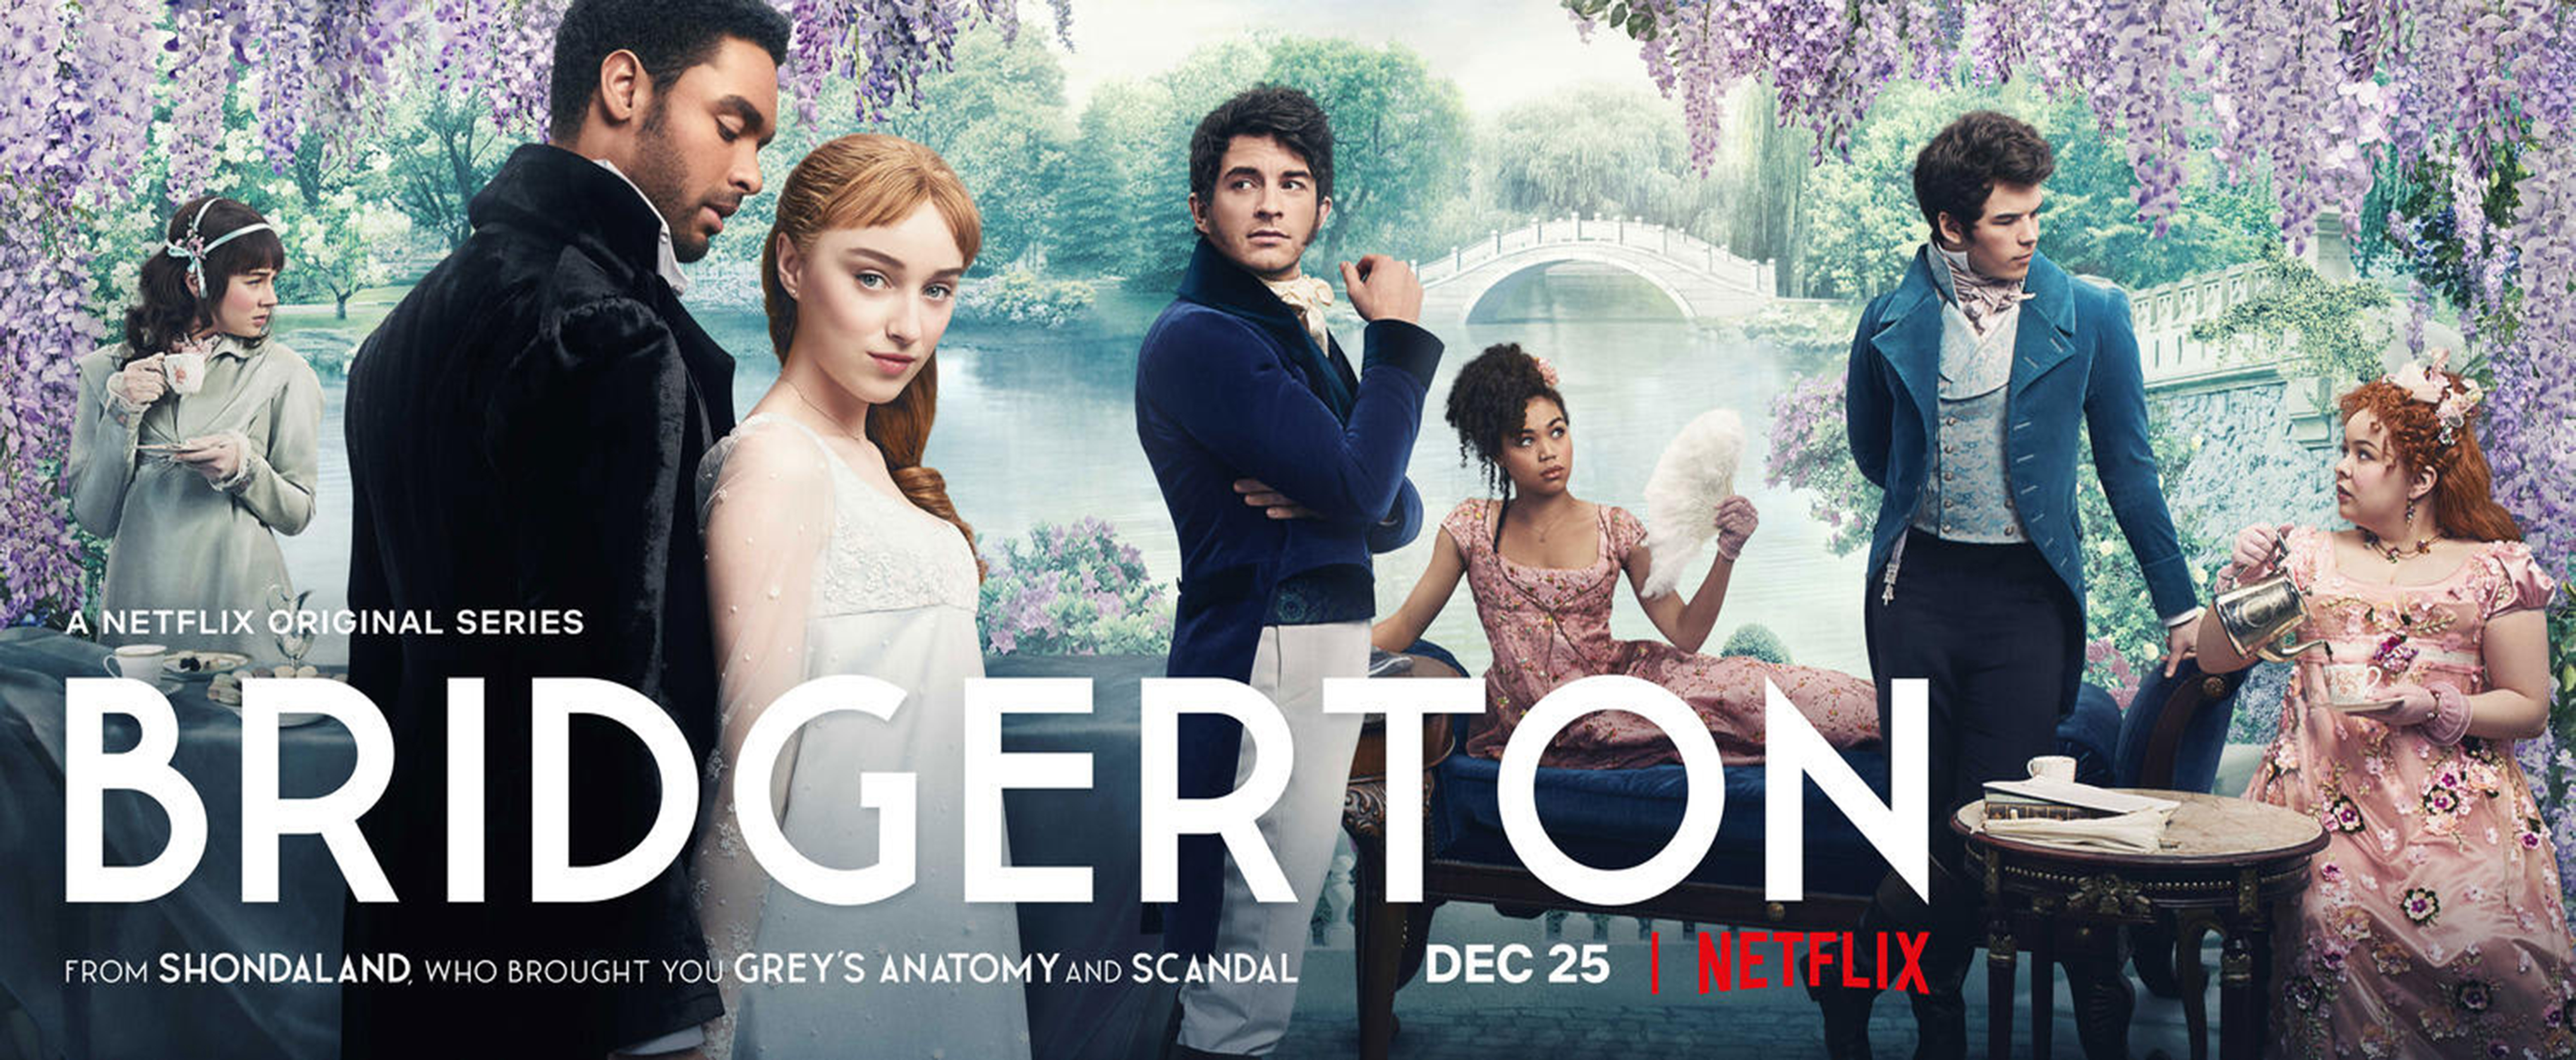 Plakat der Netflix-Serie Bridgerton, Quelle: Netflix